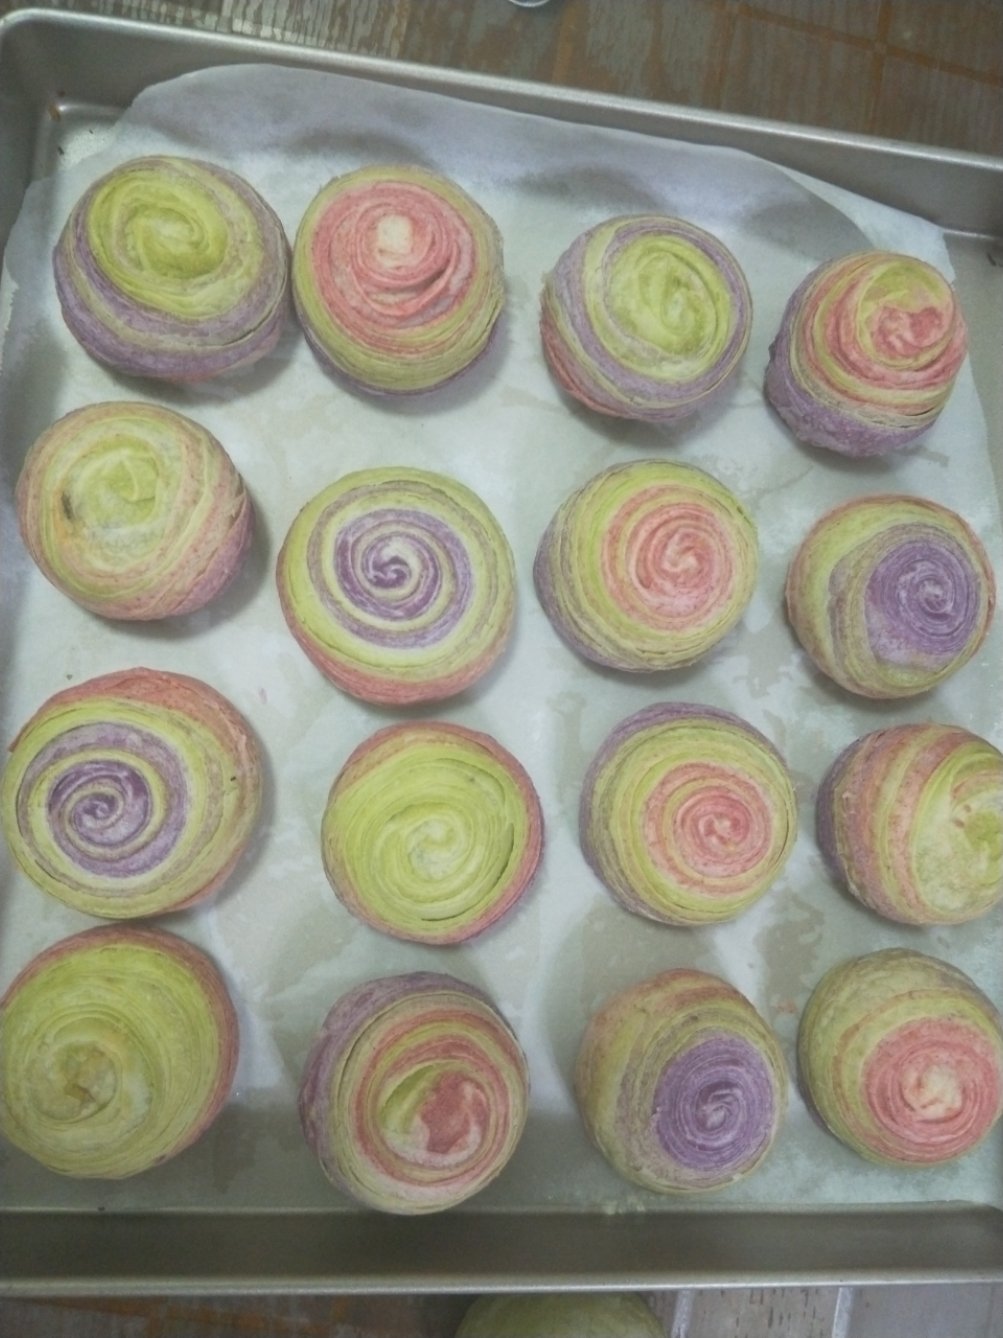 和彩虹一样美腻的彩色紫薯蛋黄酥~~附紫薯馅的做法